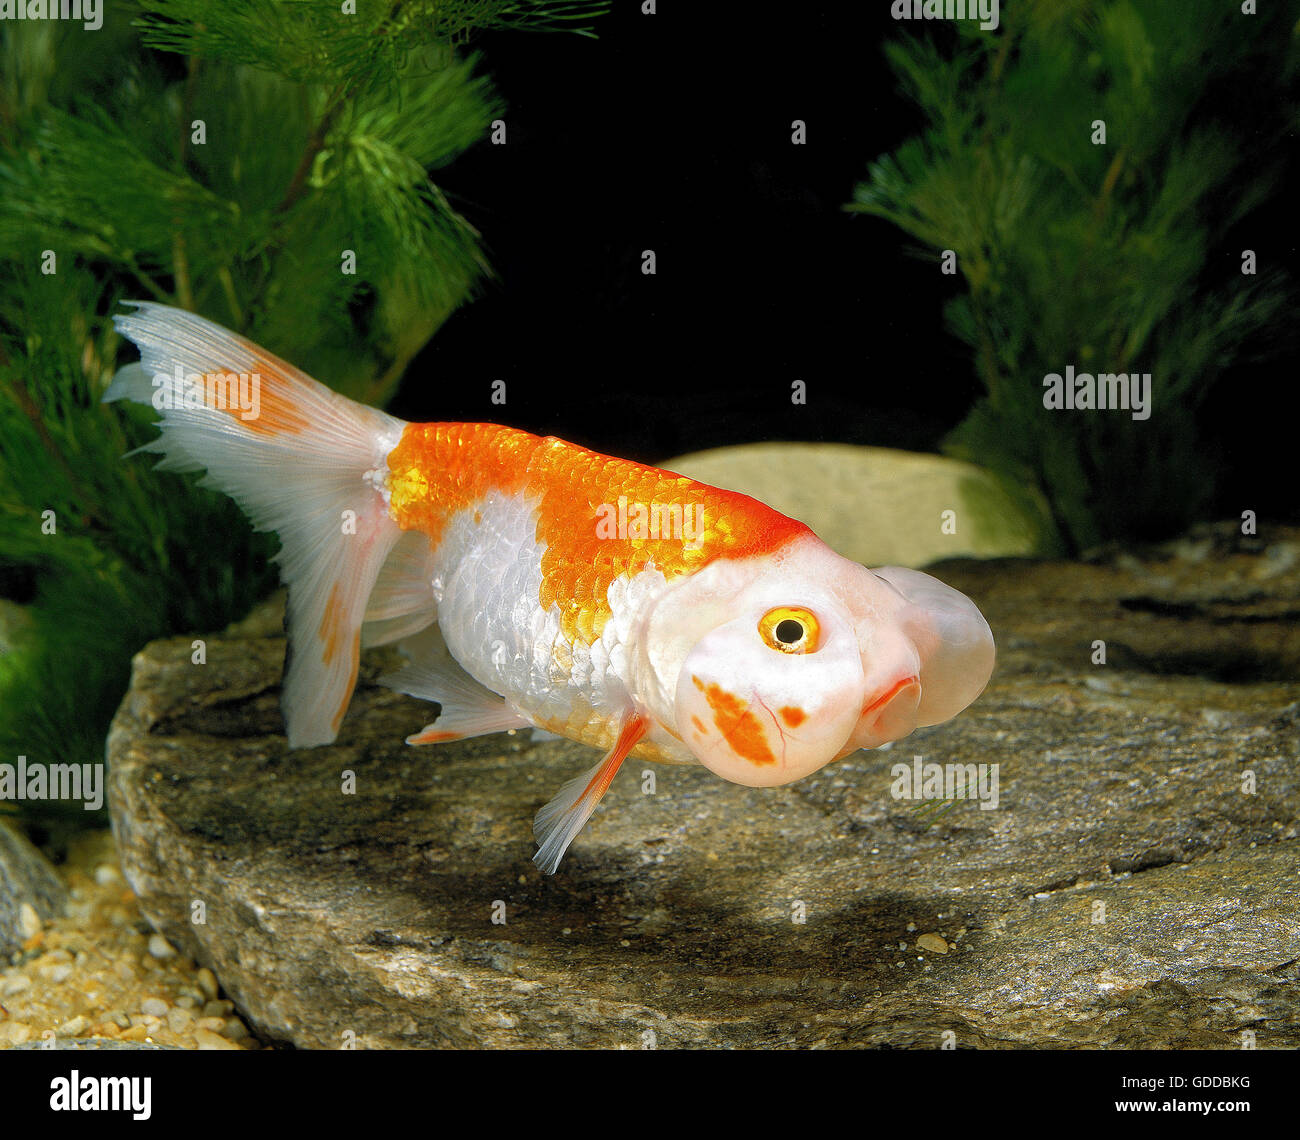 Pesce Rosso Occhio Bolla D'acqua Immagini e Fotos Stock - Alamy